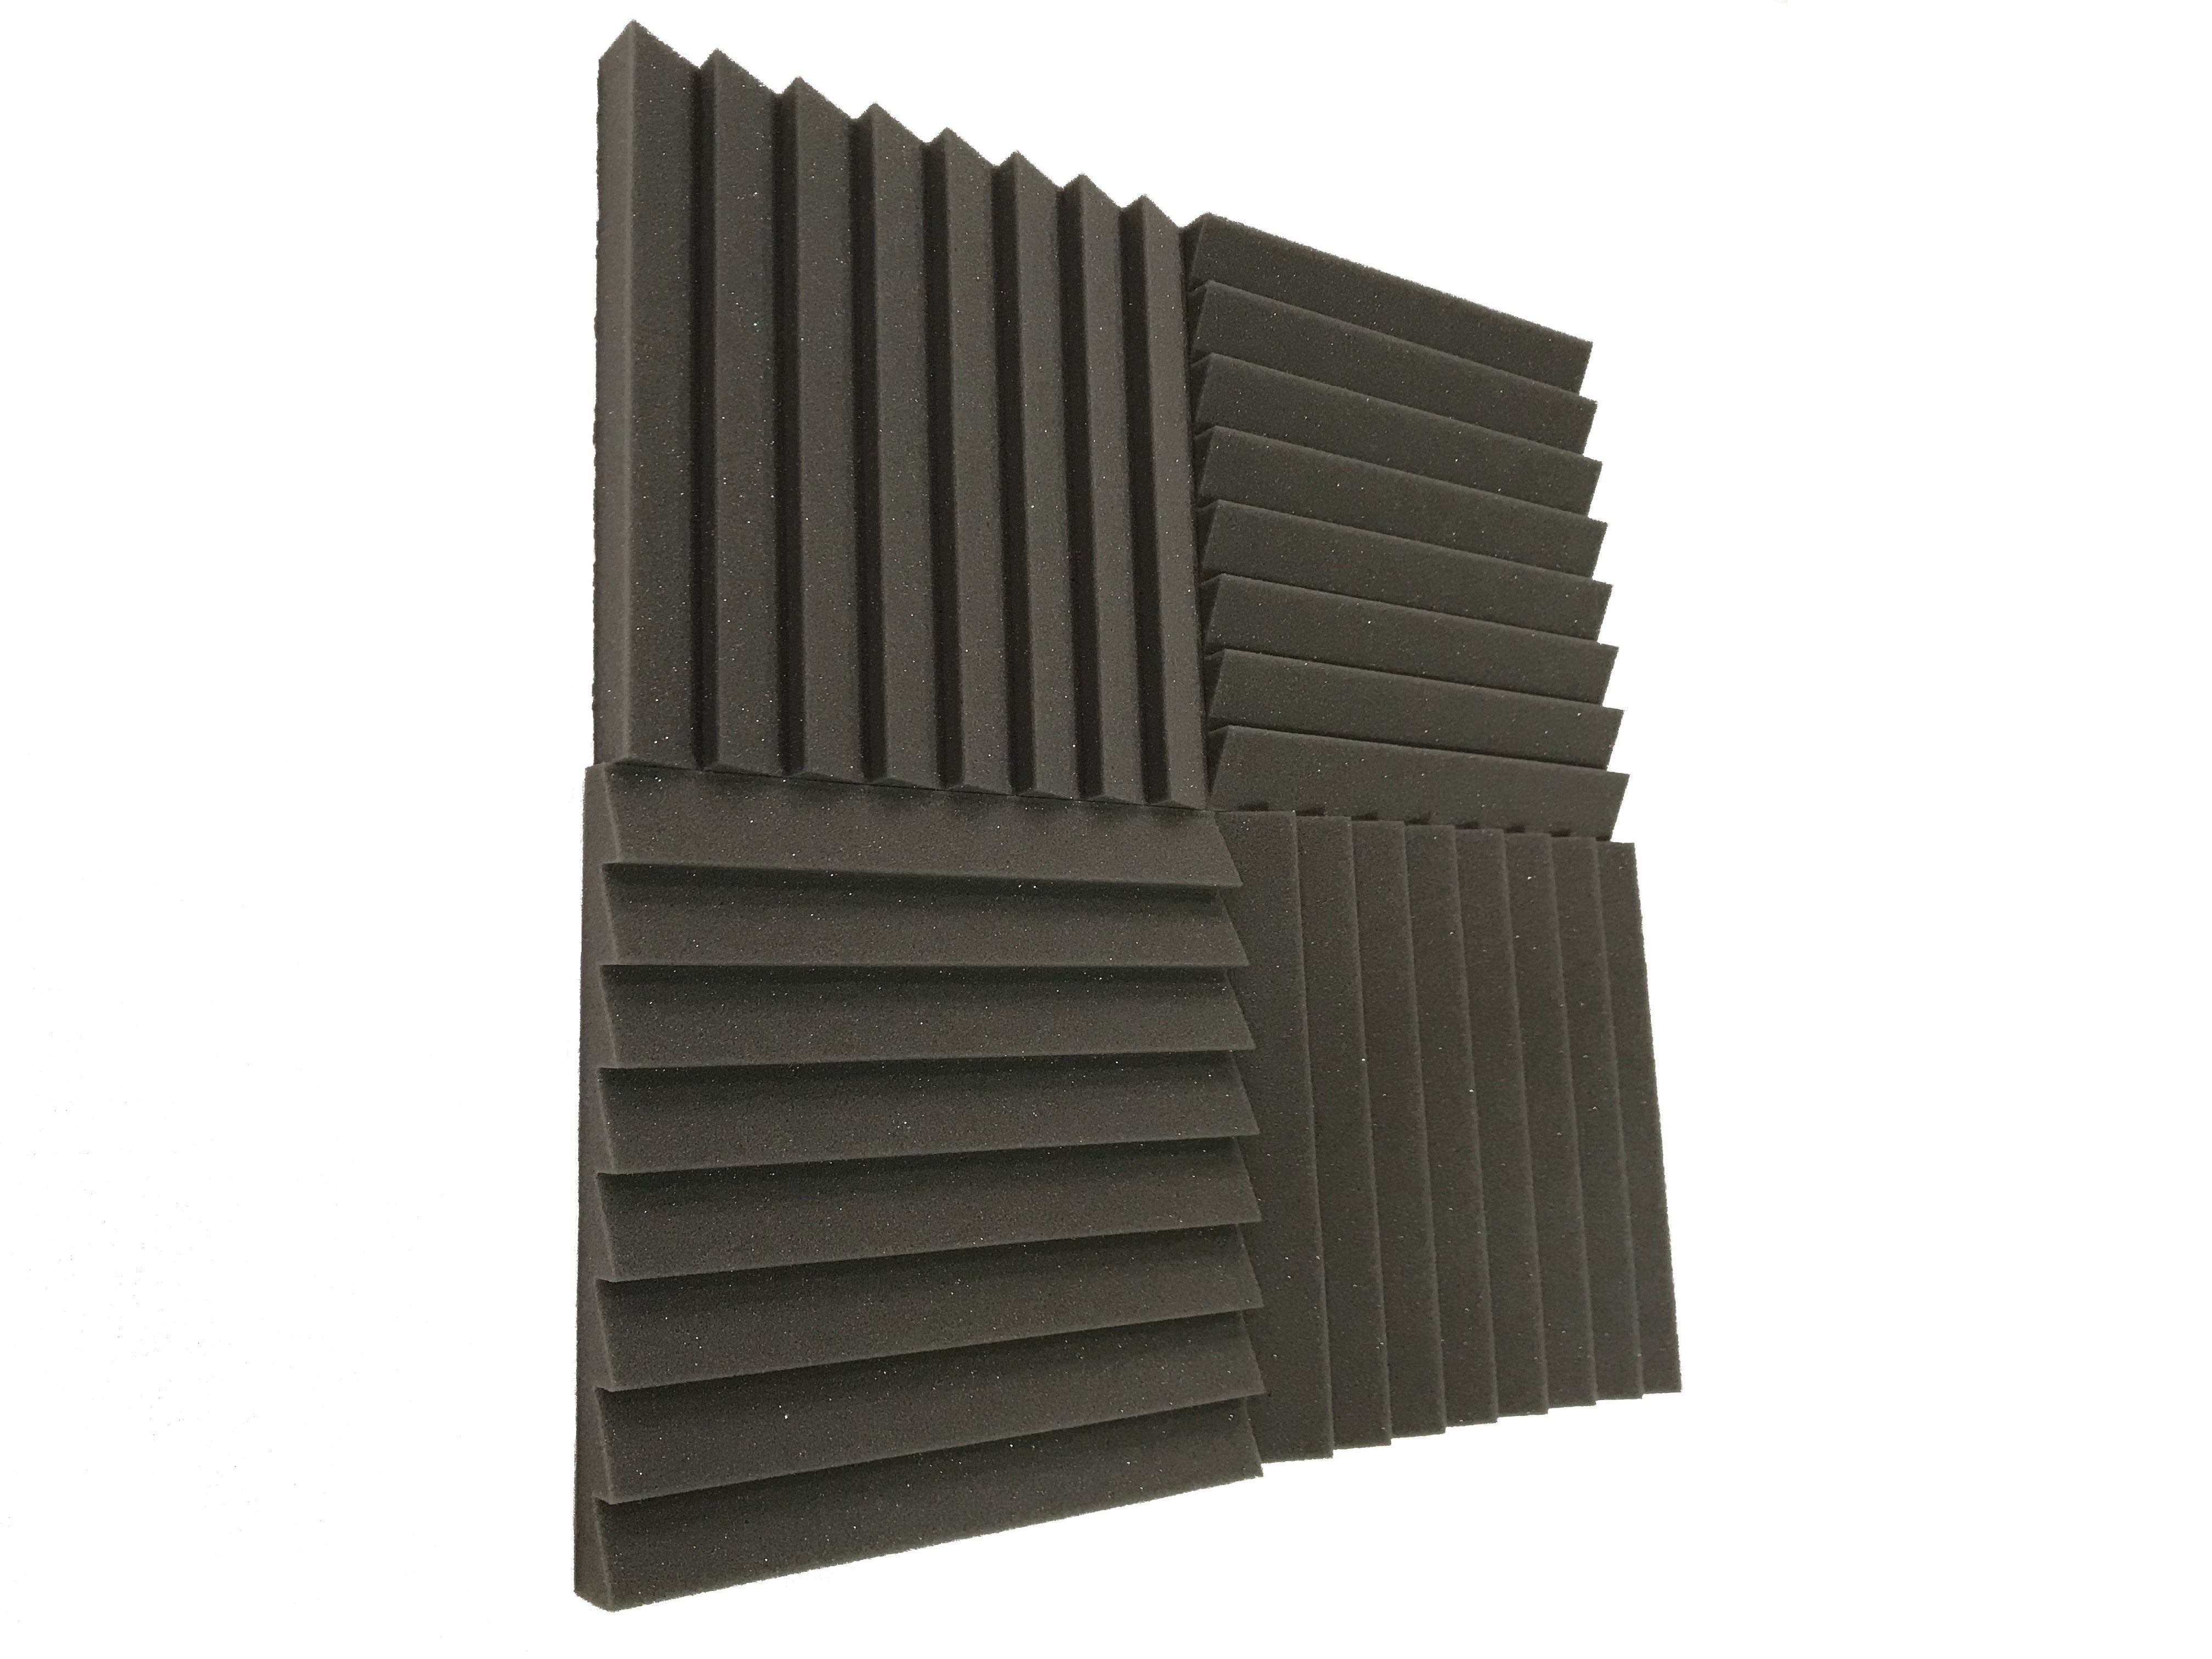 Sawtooth 12" Acoustic Studio Foam Tile Pack - Advanced Acoustics